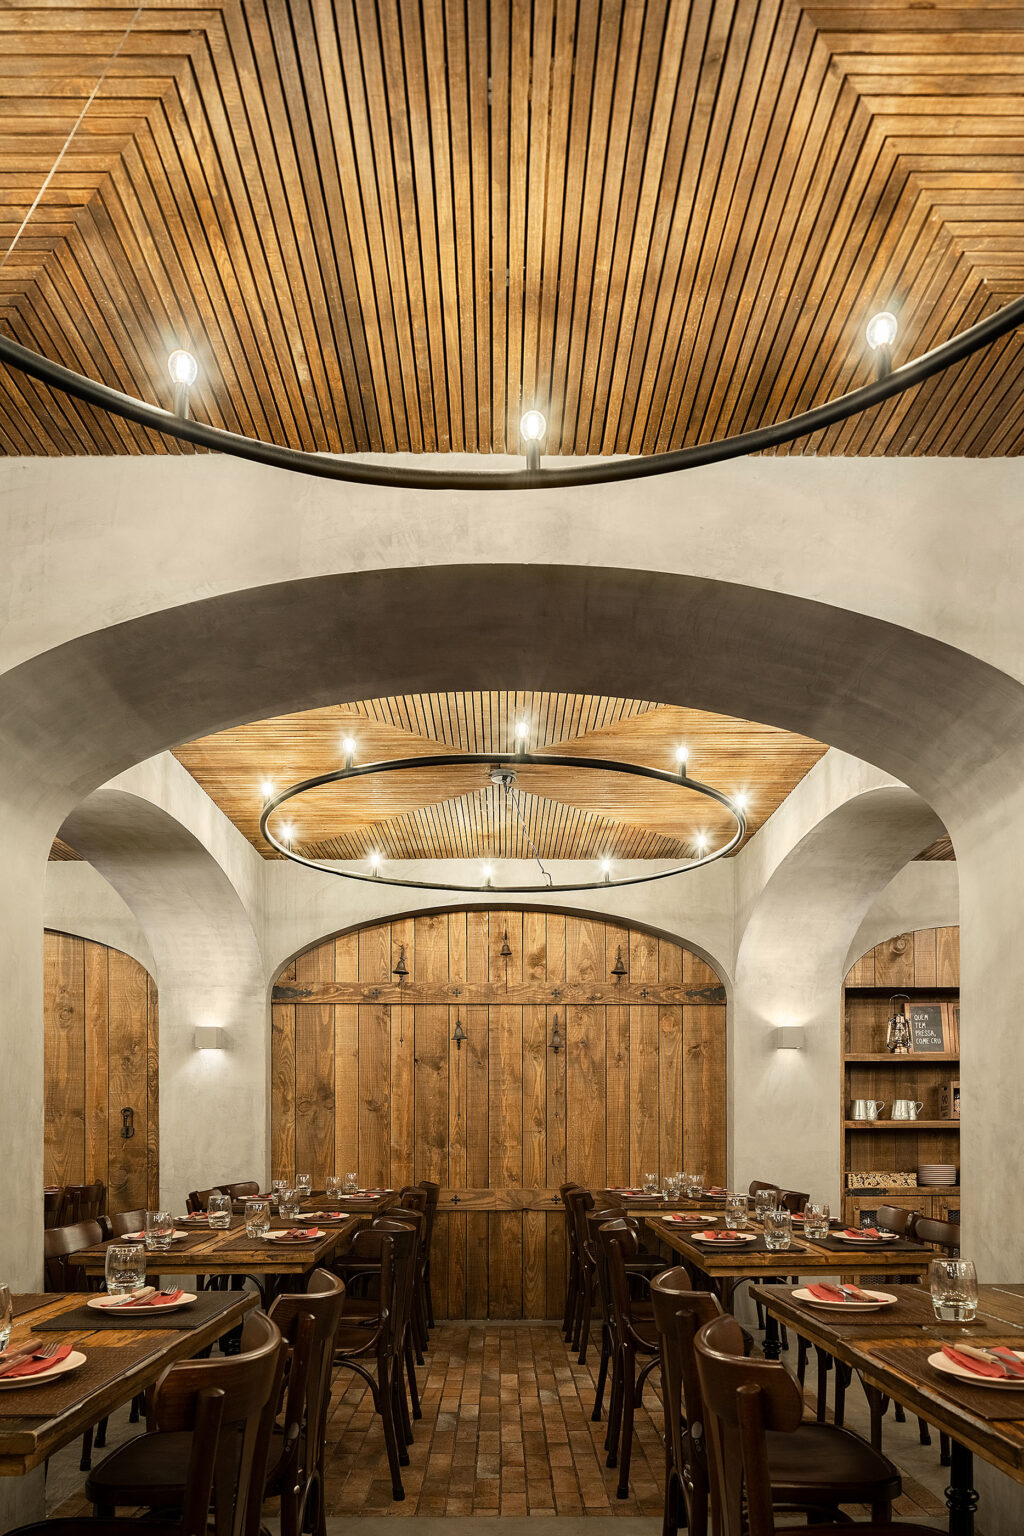 Une expérience unique dans une ambiance cave. Restaurant BARRIL. PAULO MERLINI architectes